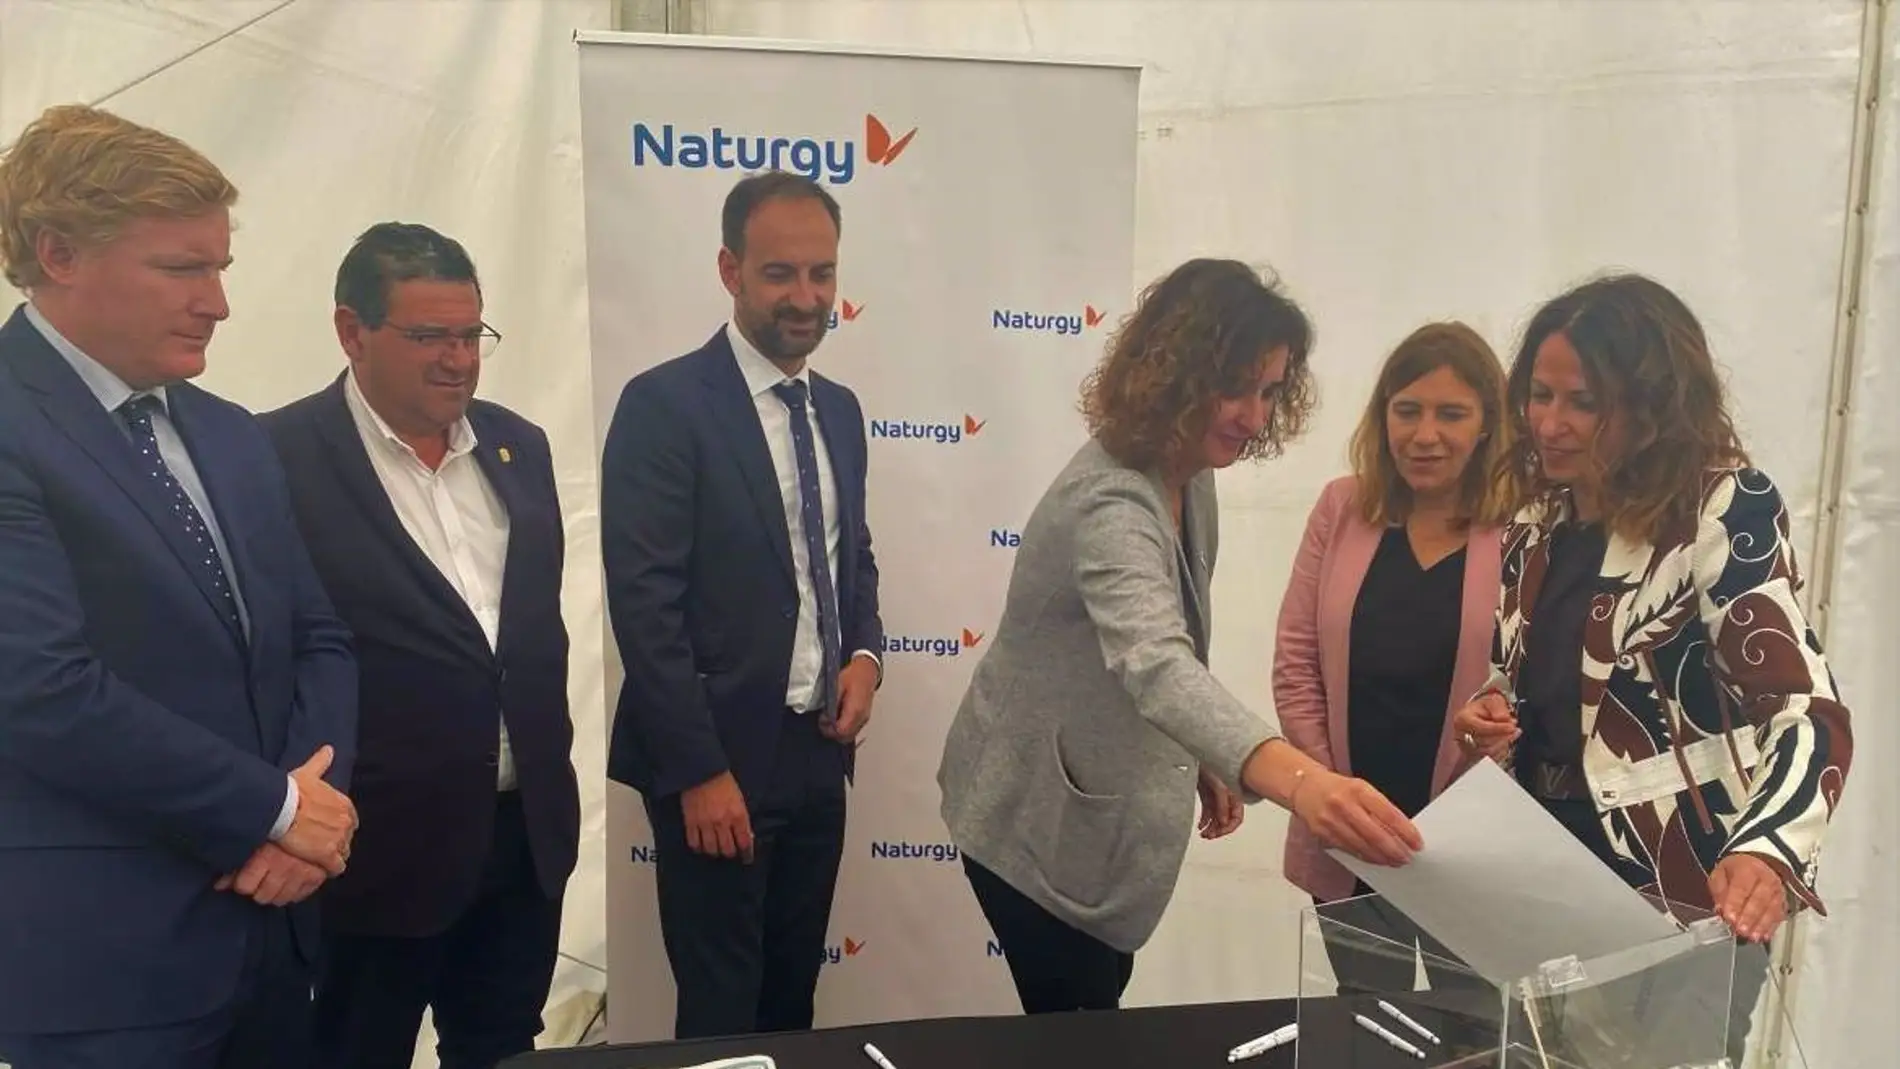 La fotovoltaica de Naturgy entre La Albuera y Badajoz creará 360 empleos en construcción, mantenimiento y operación